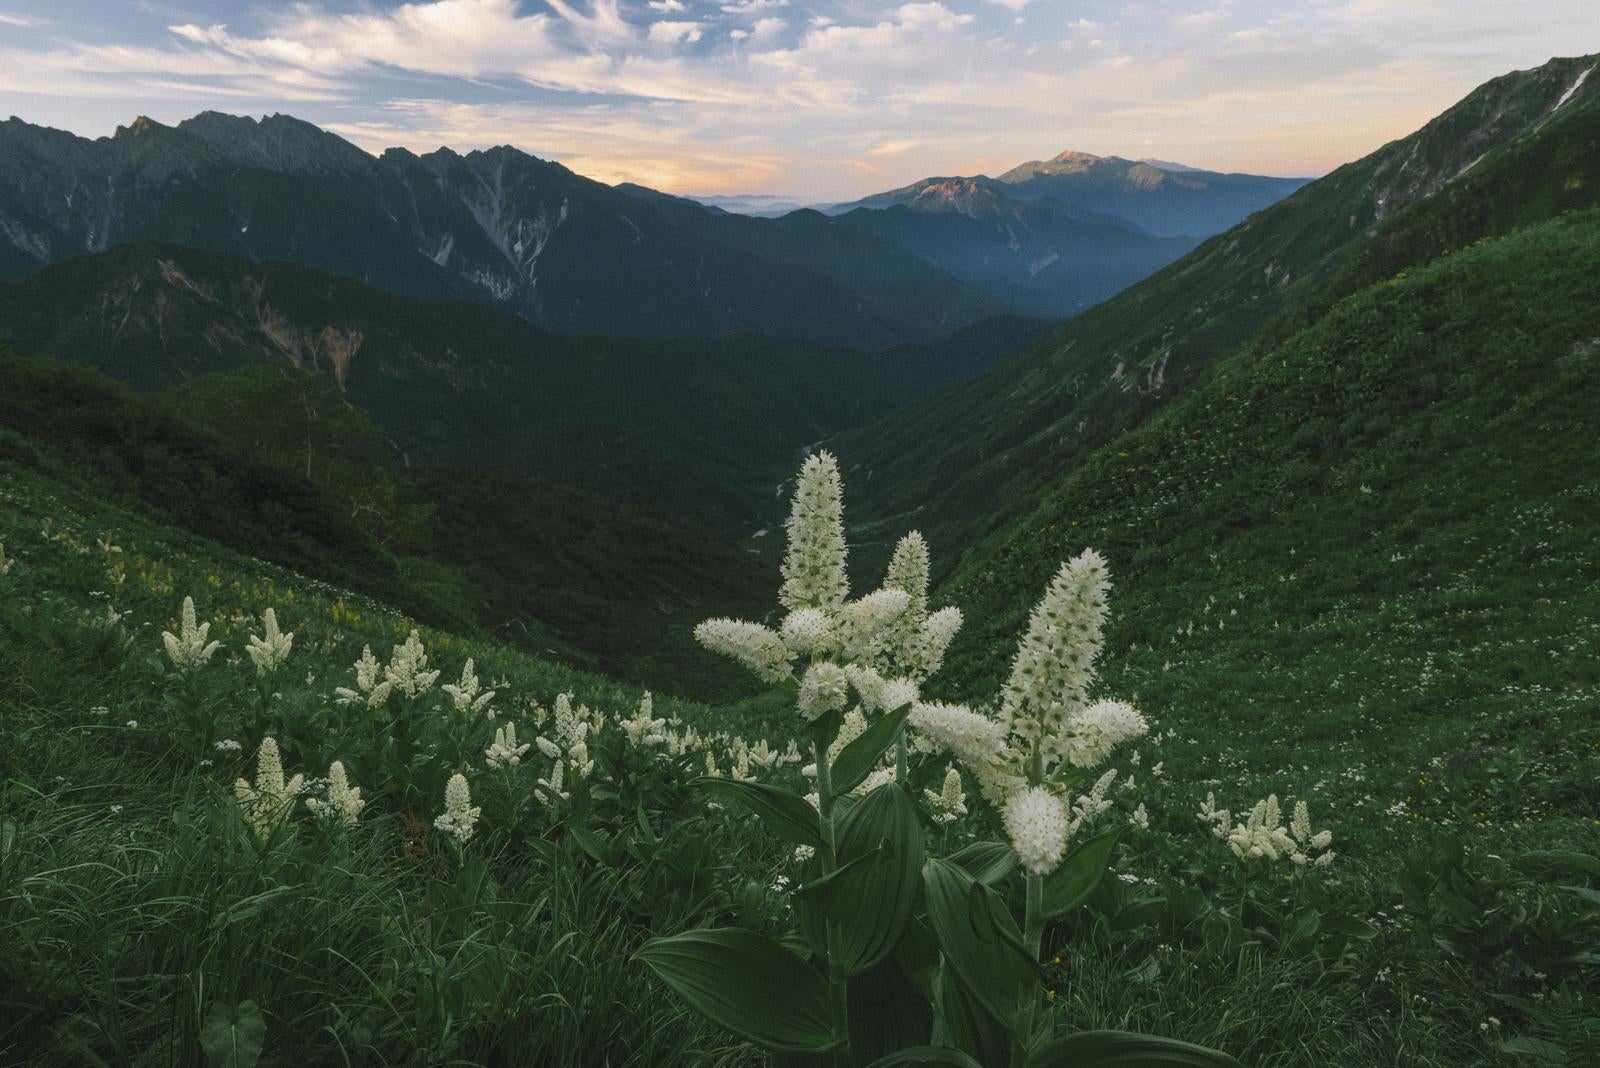 「夜明けの谷に咲くバイケイソウ」の写真